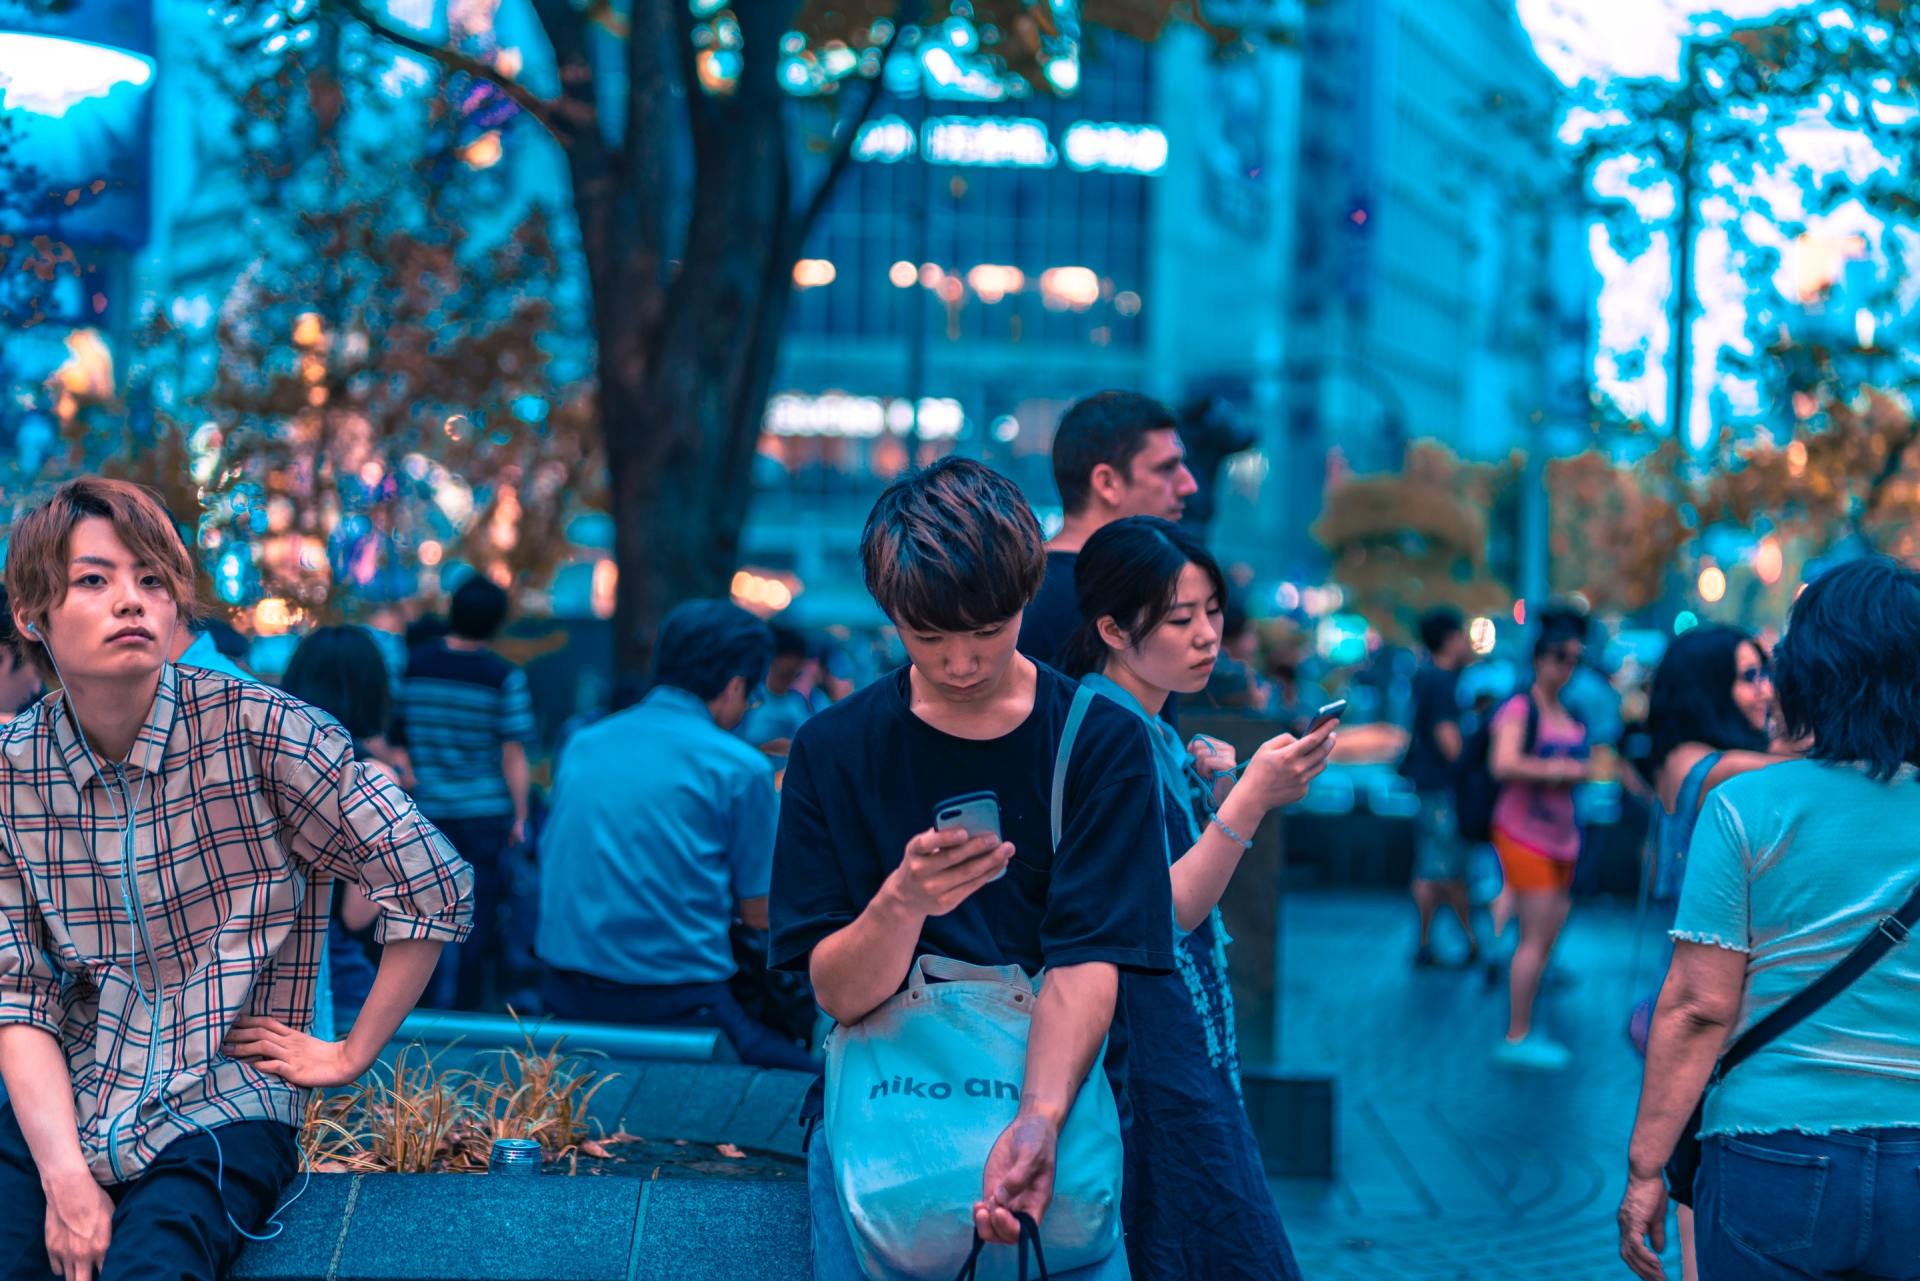 Japanese people on smart phones